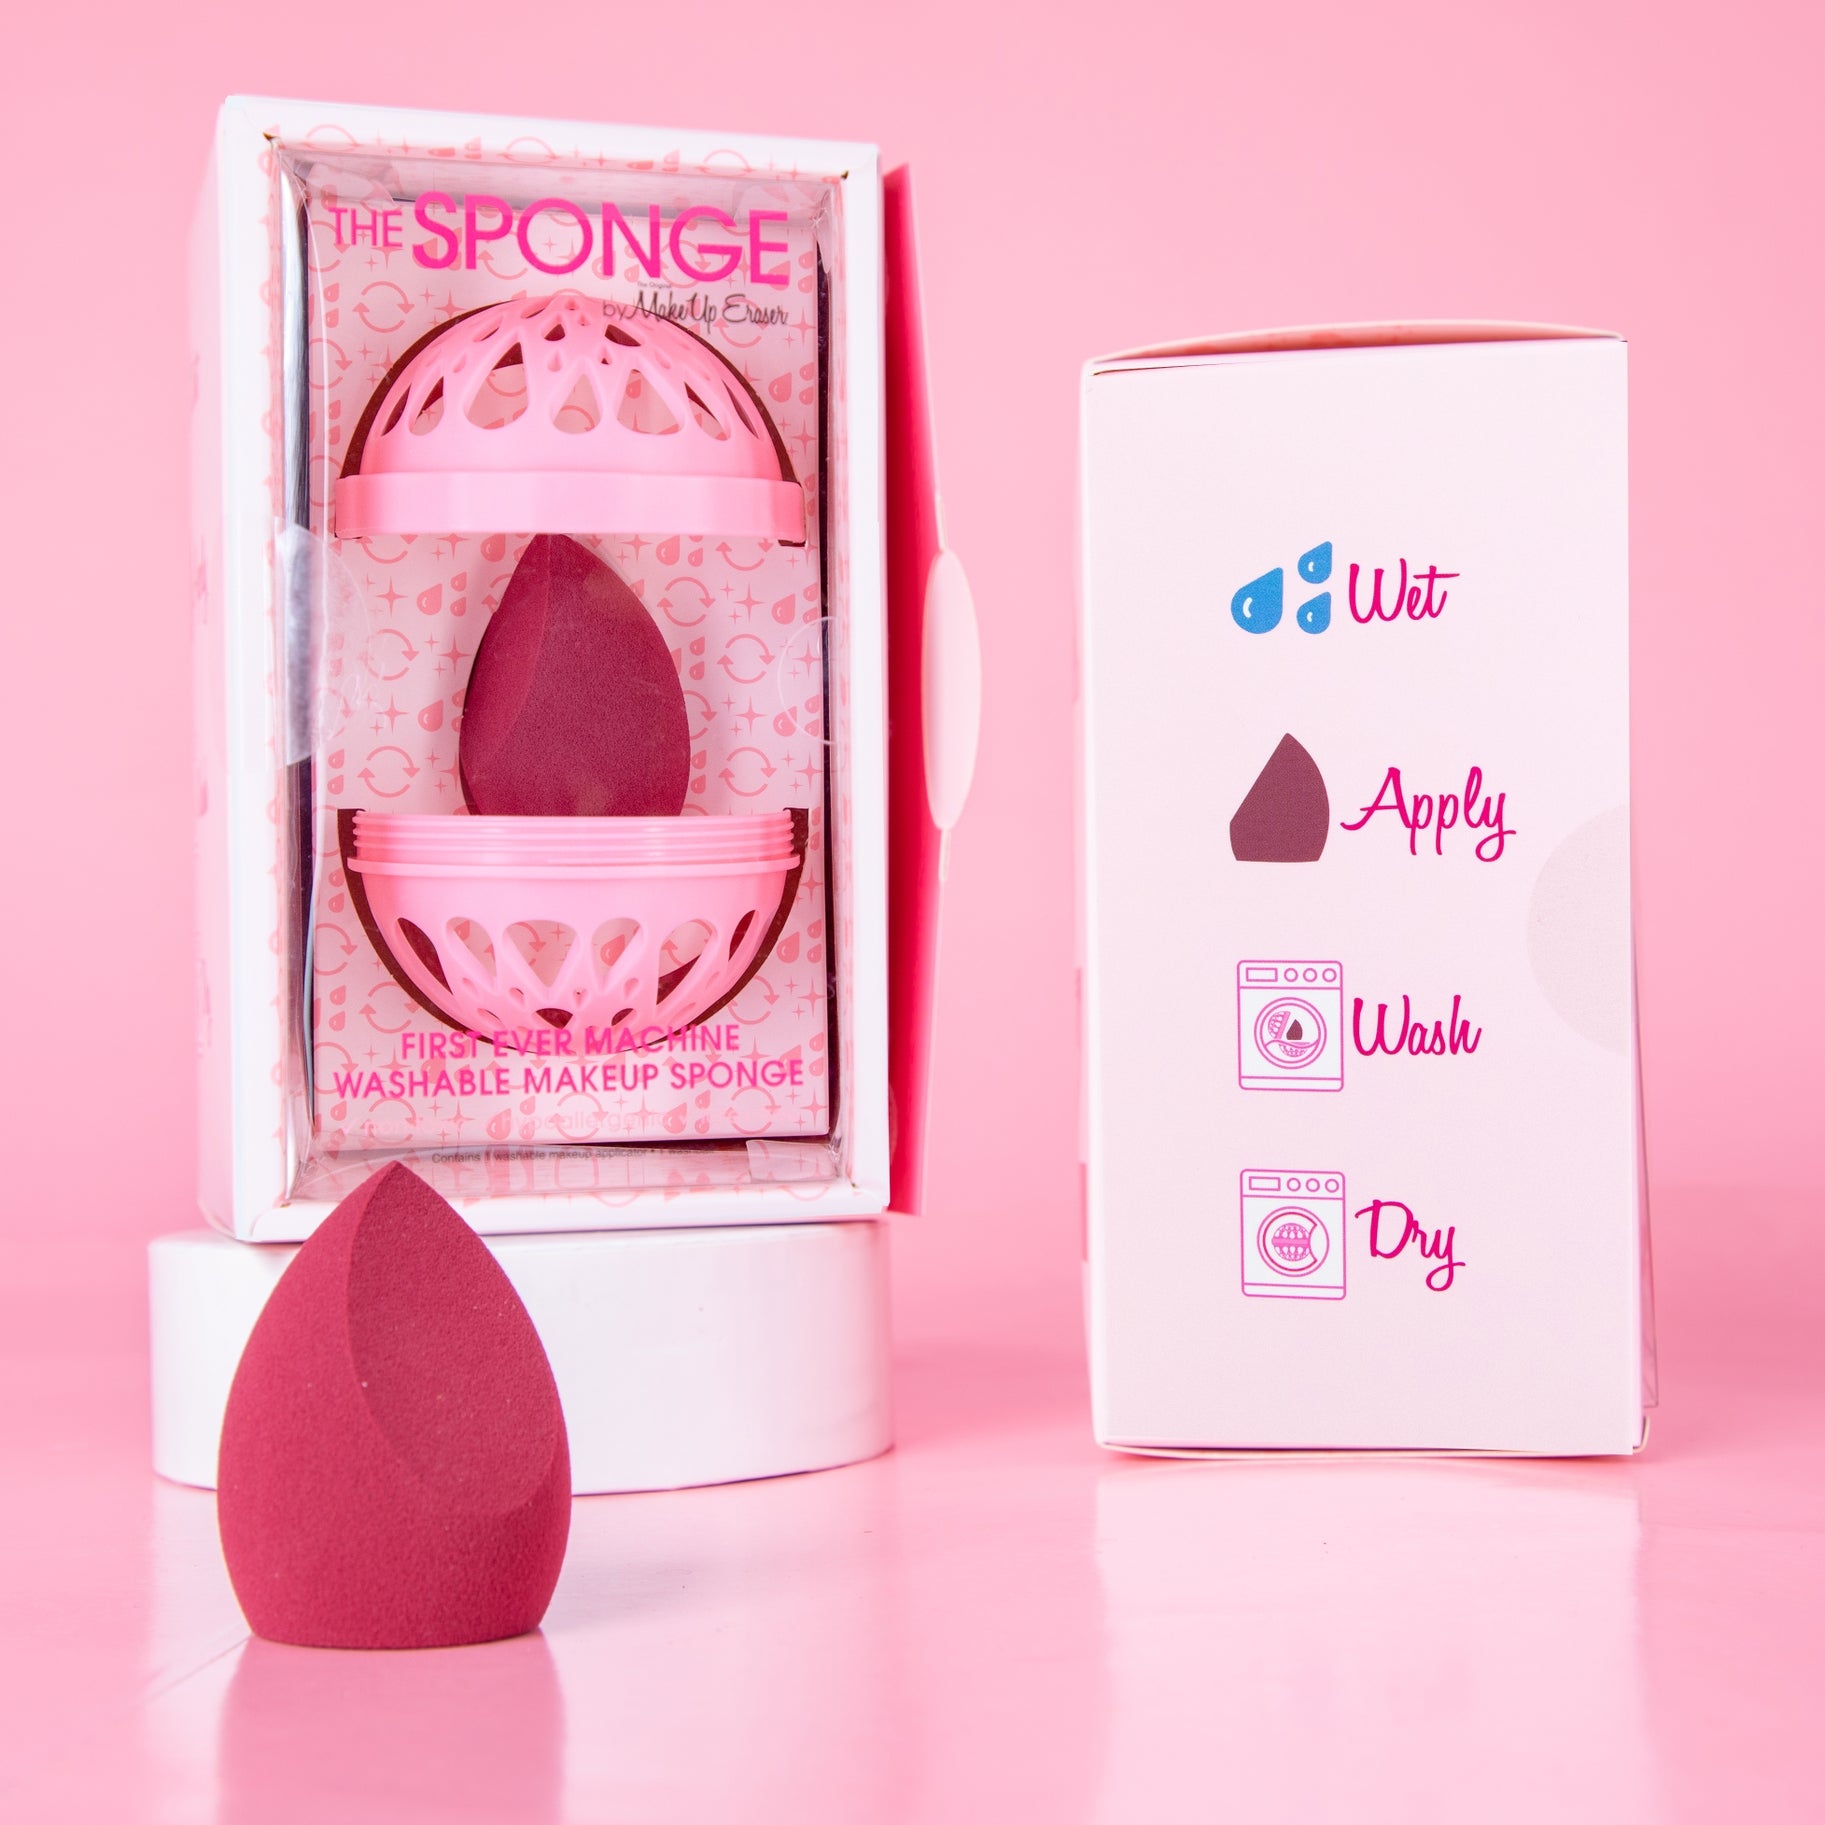 The Makeup Eraser Sponge Gifts Makeup Eraser   